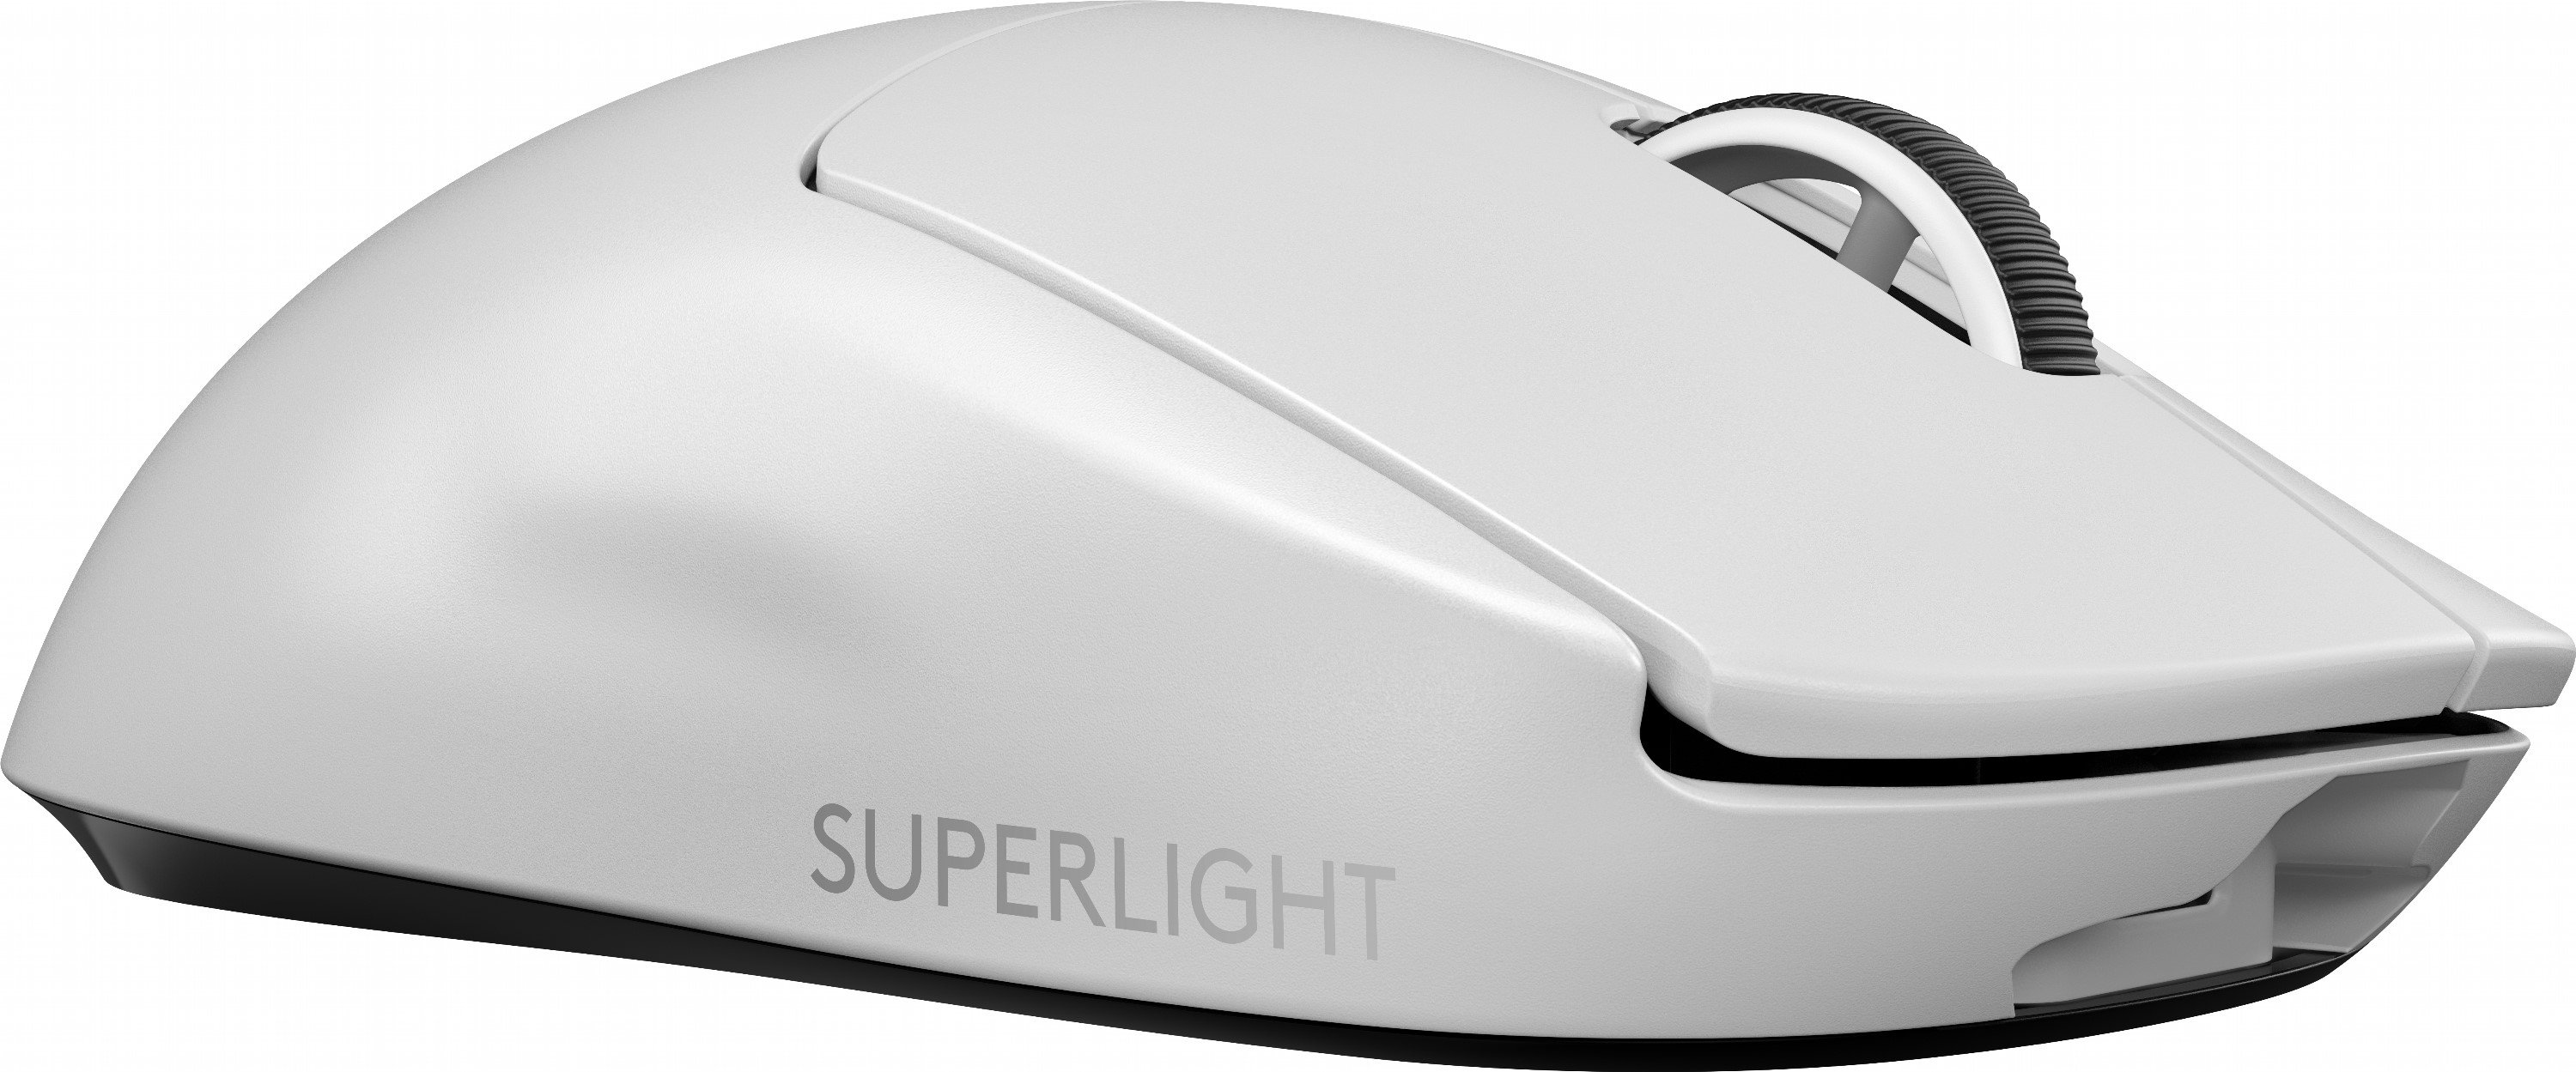 Игровая мышь logitech superlight. Мышь Logitech Pro x Superlight. Мышь Logitech g Pro x Superlight. Logitech g Pro x Superlight Wireless White. Logitech g Pro Superlight.